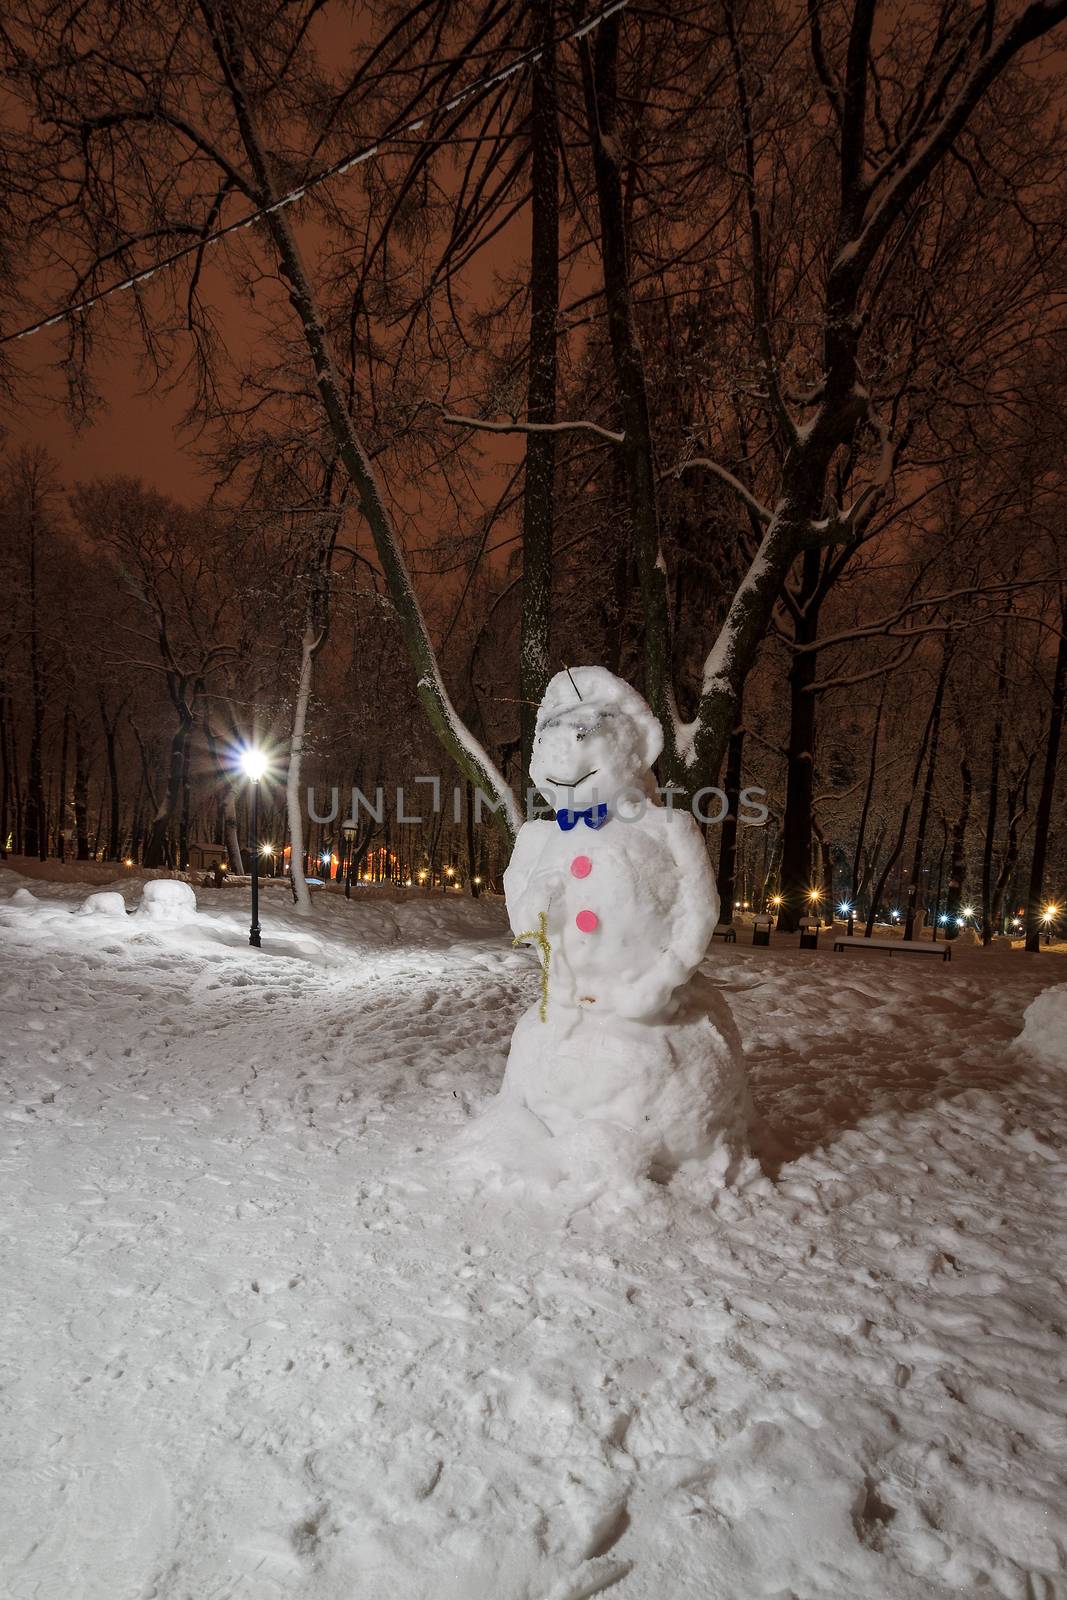 snowman at night park at winter season